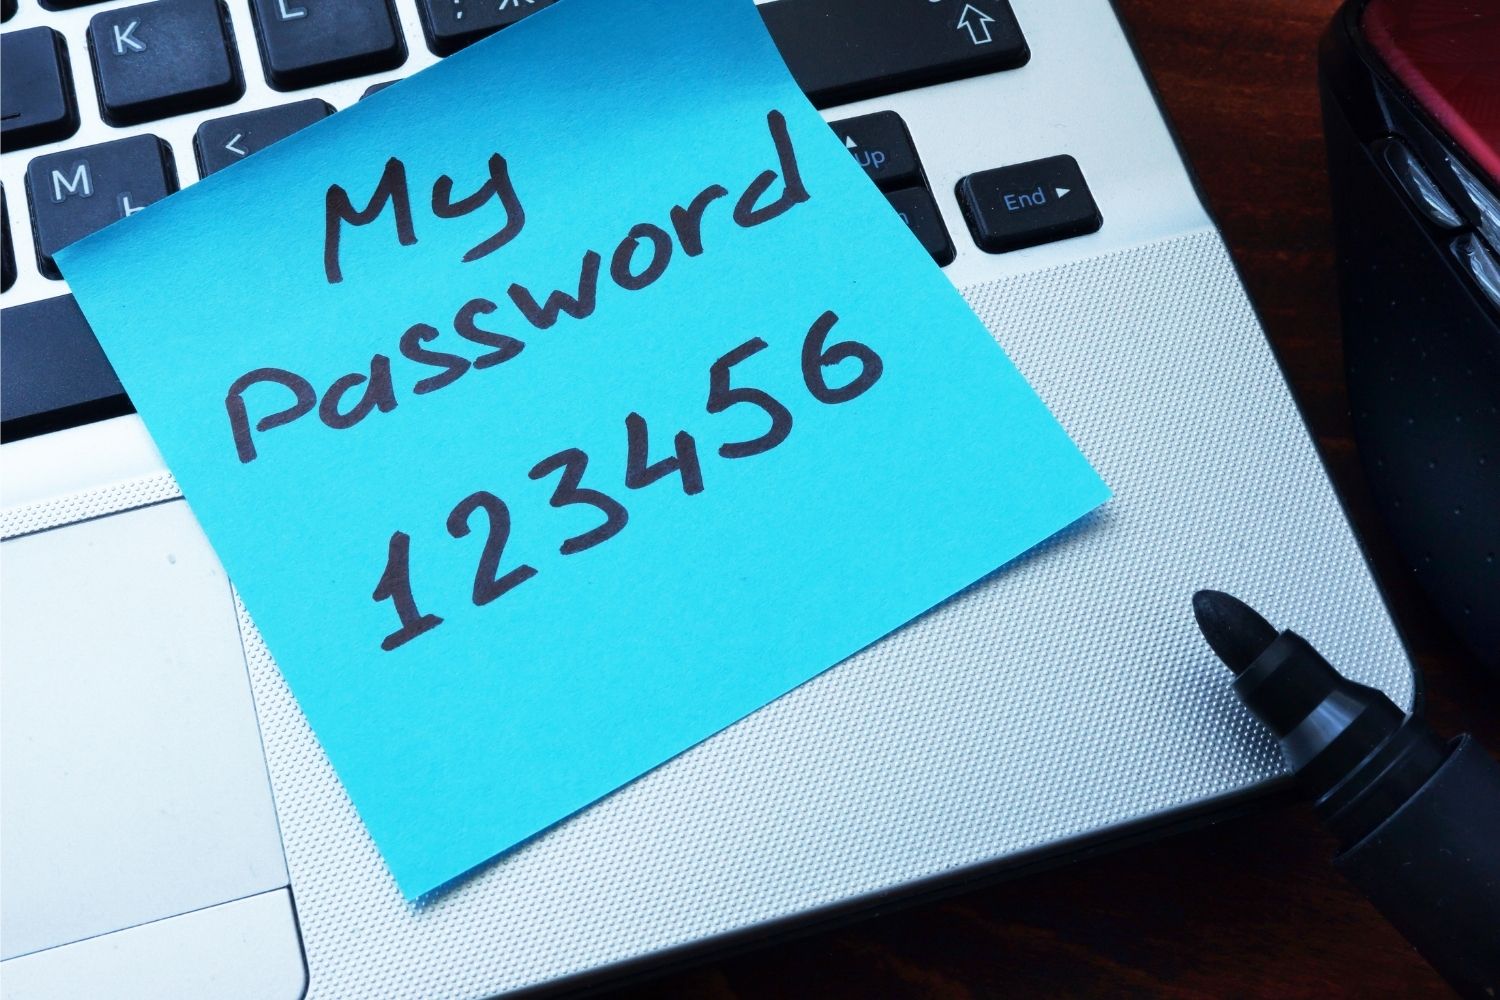 123456 ist kein sicheres Passwort.